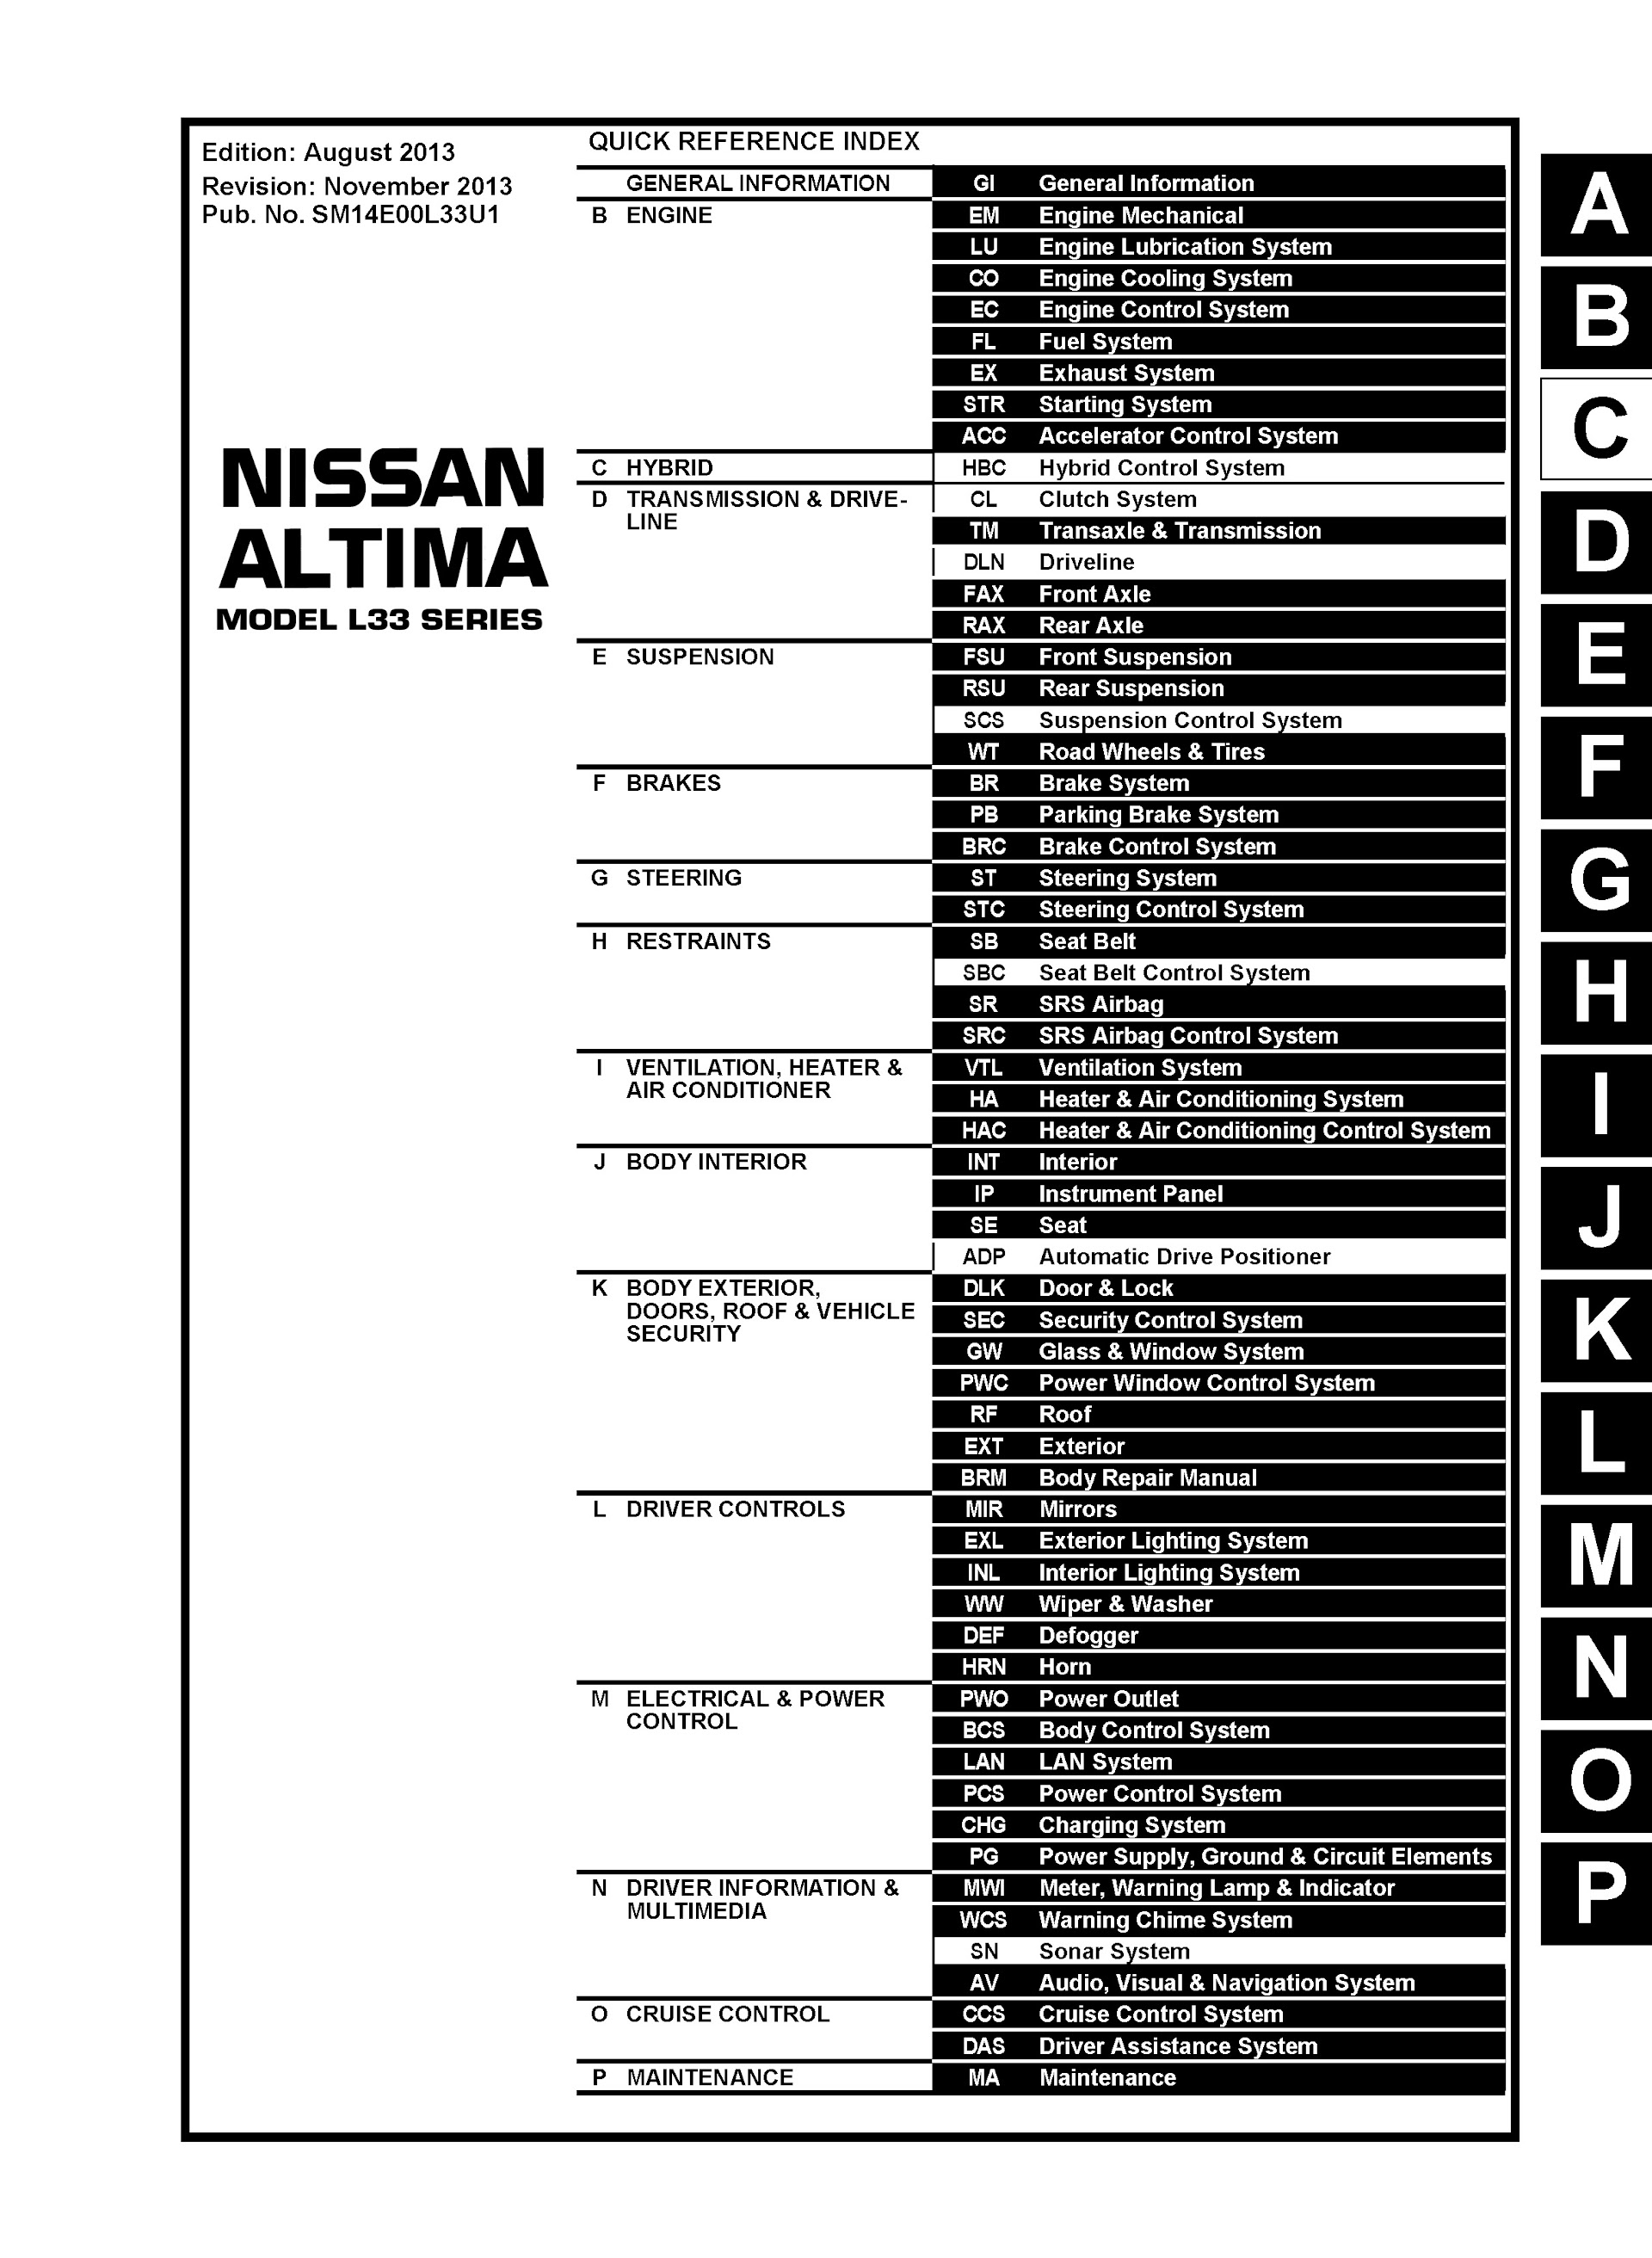 Table of Conetns 2014 Nissan Altima Repair Manual